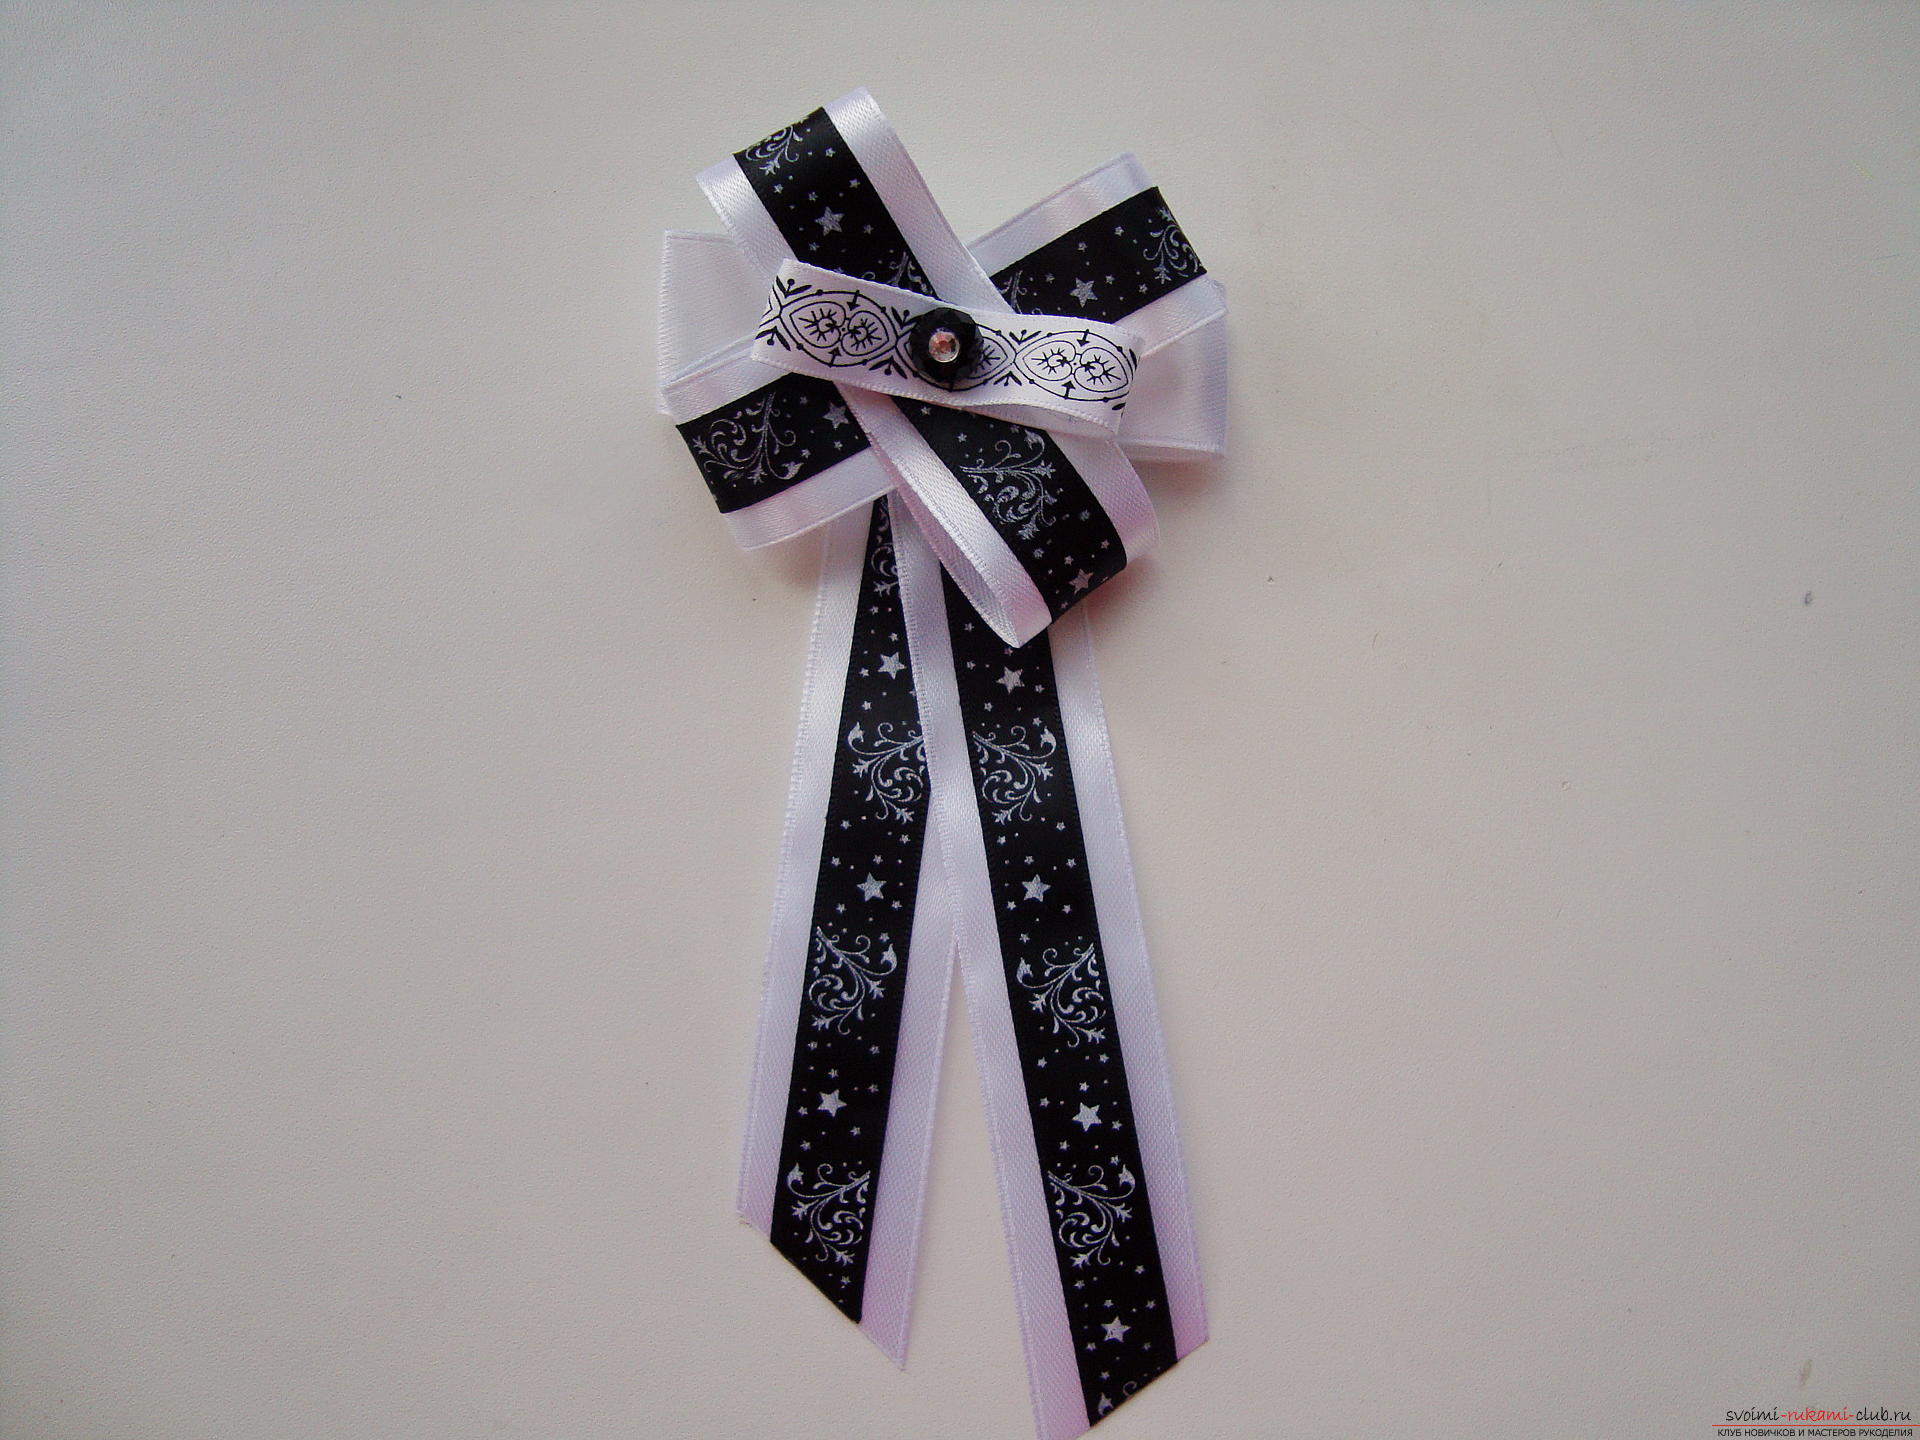 Пошаговая инструкция по созданию галстука для девочки к 1 сенября. Фото №1